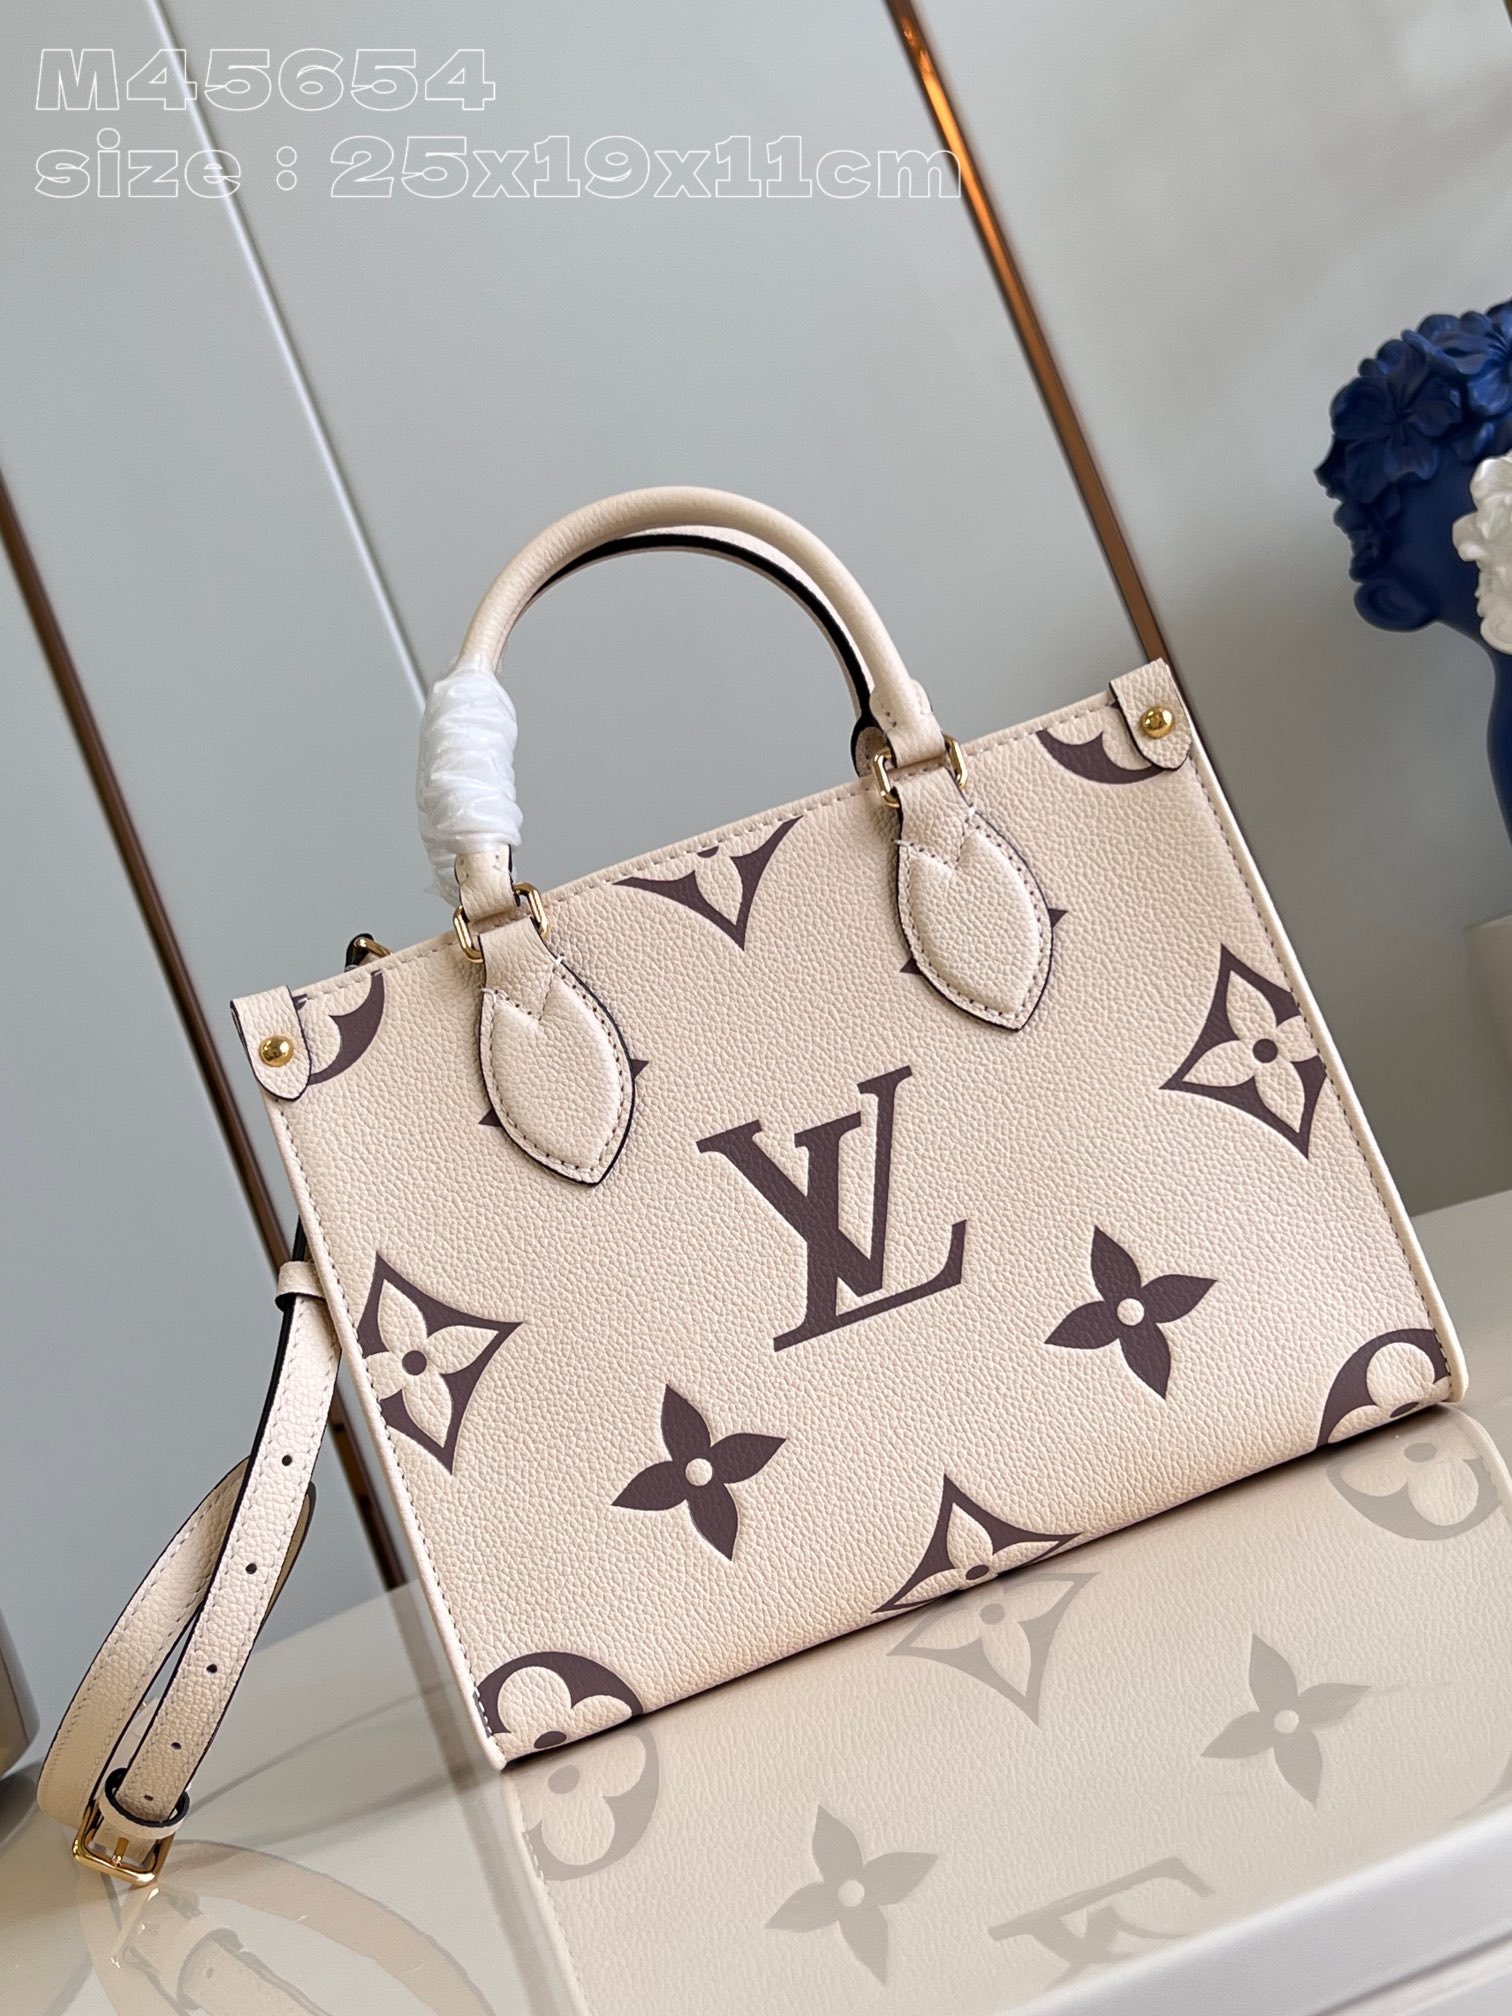 Louis Vuitton LV Onthego Handbags Tote Bags White Empreinte​ Mini M45654